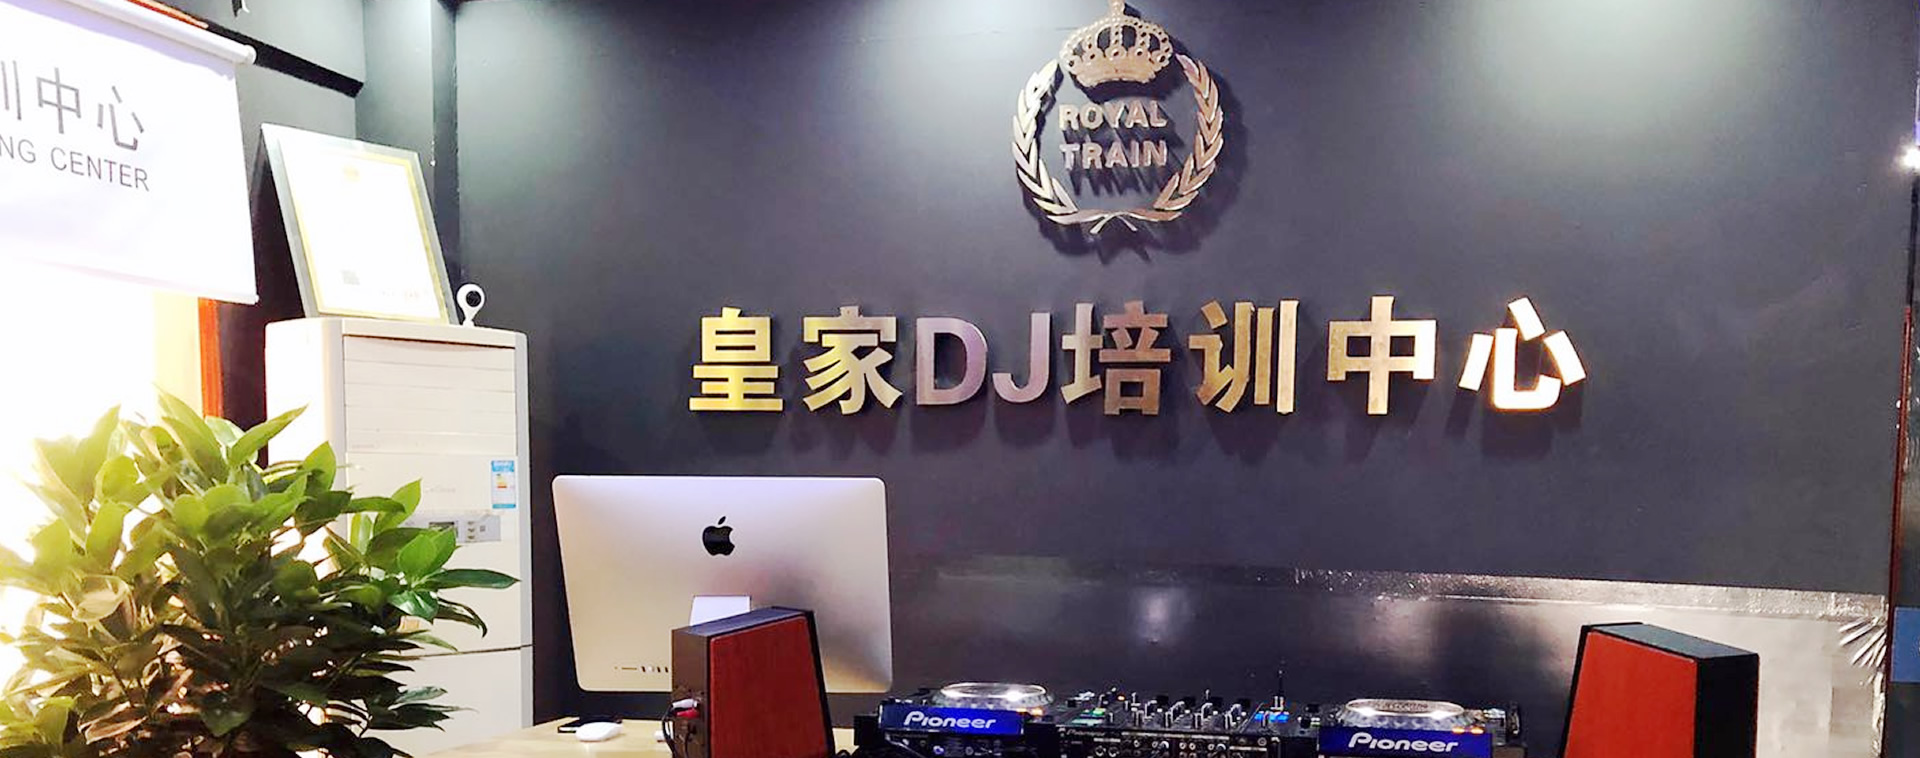 皇家星空DJ培训中心-贵阳校区